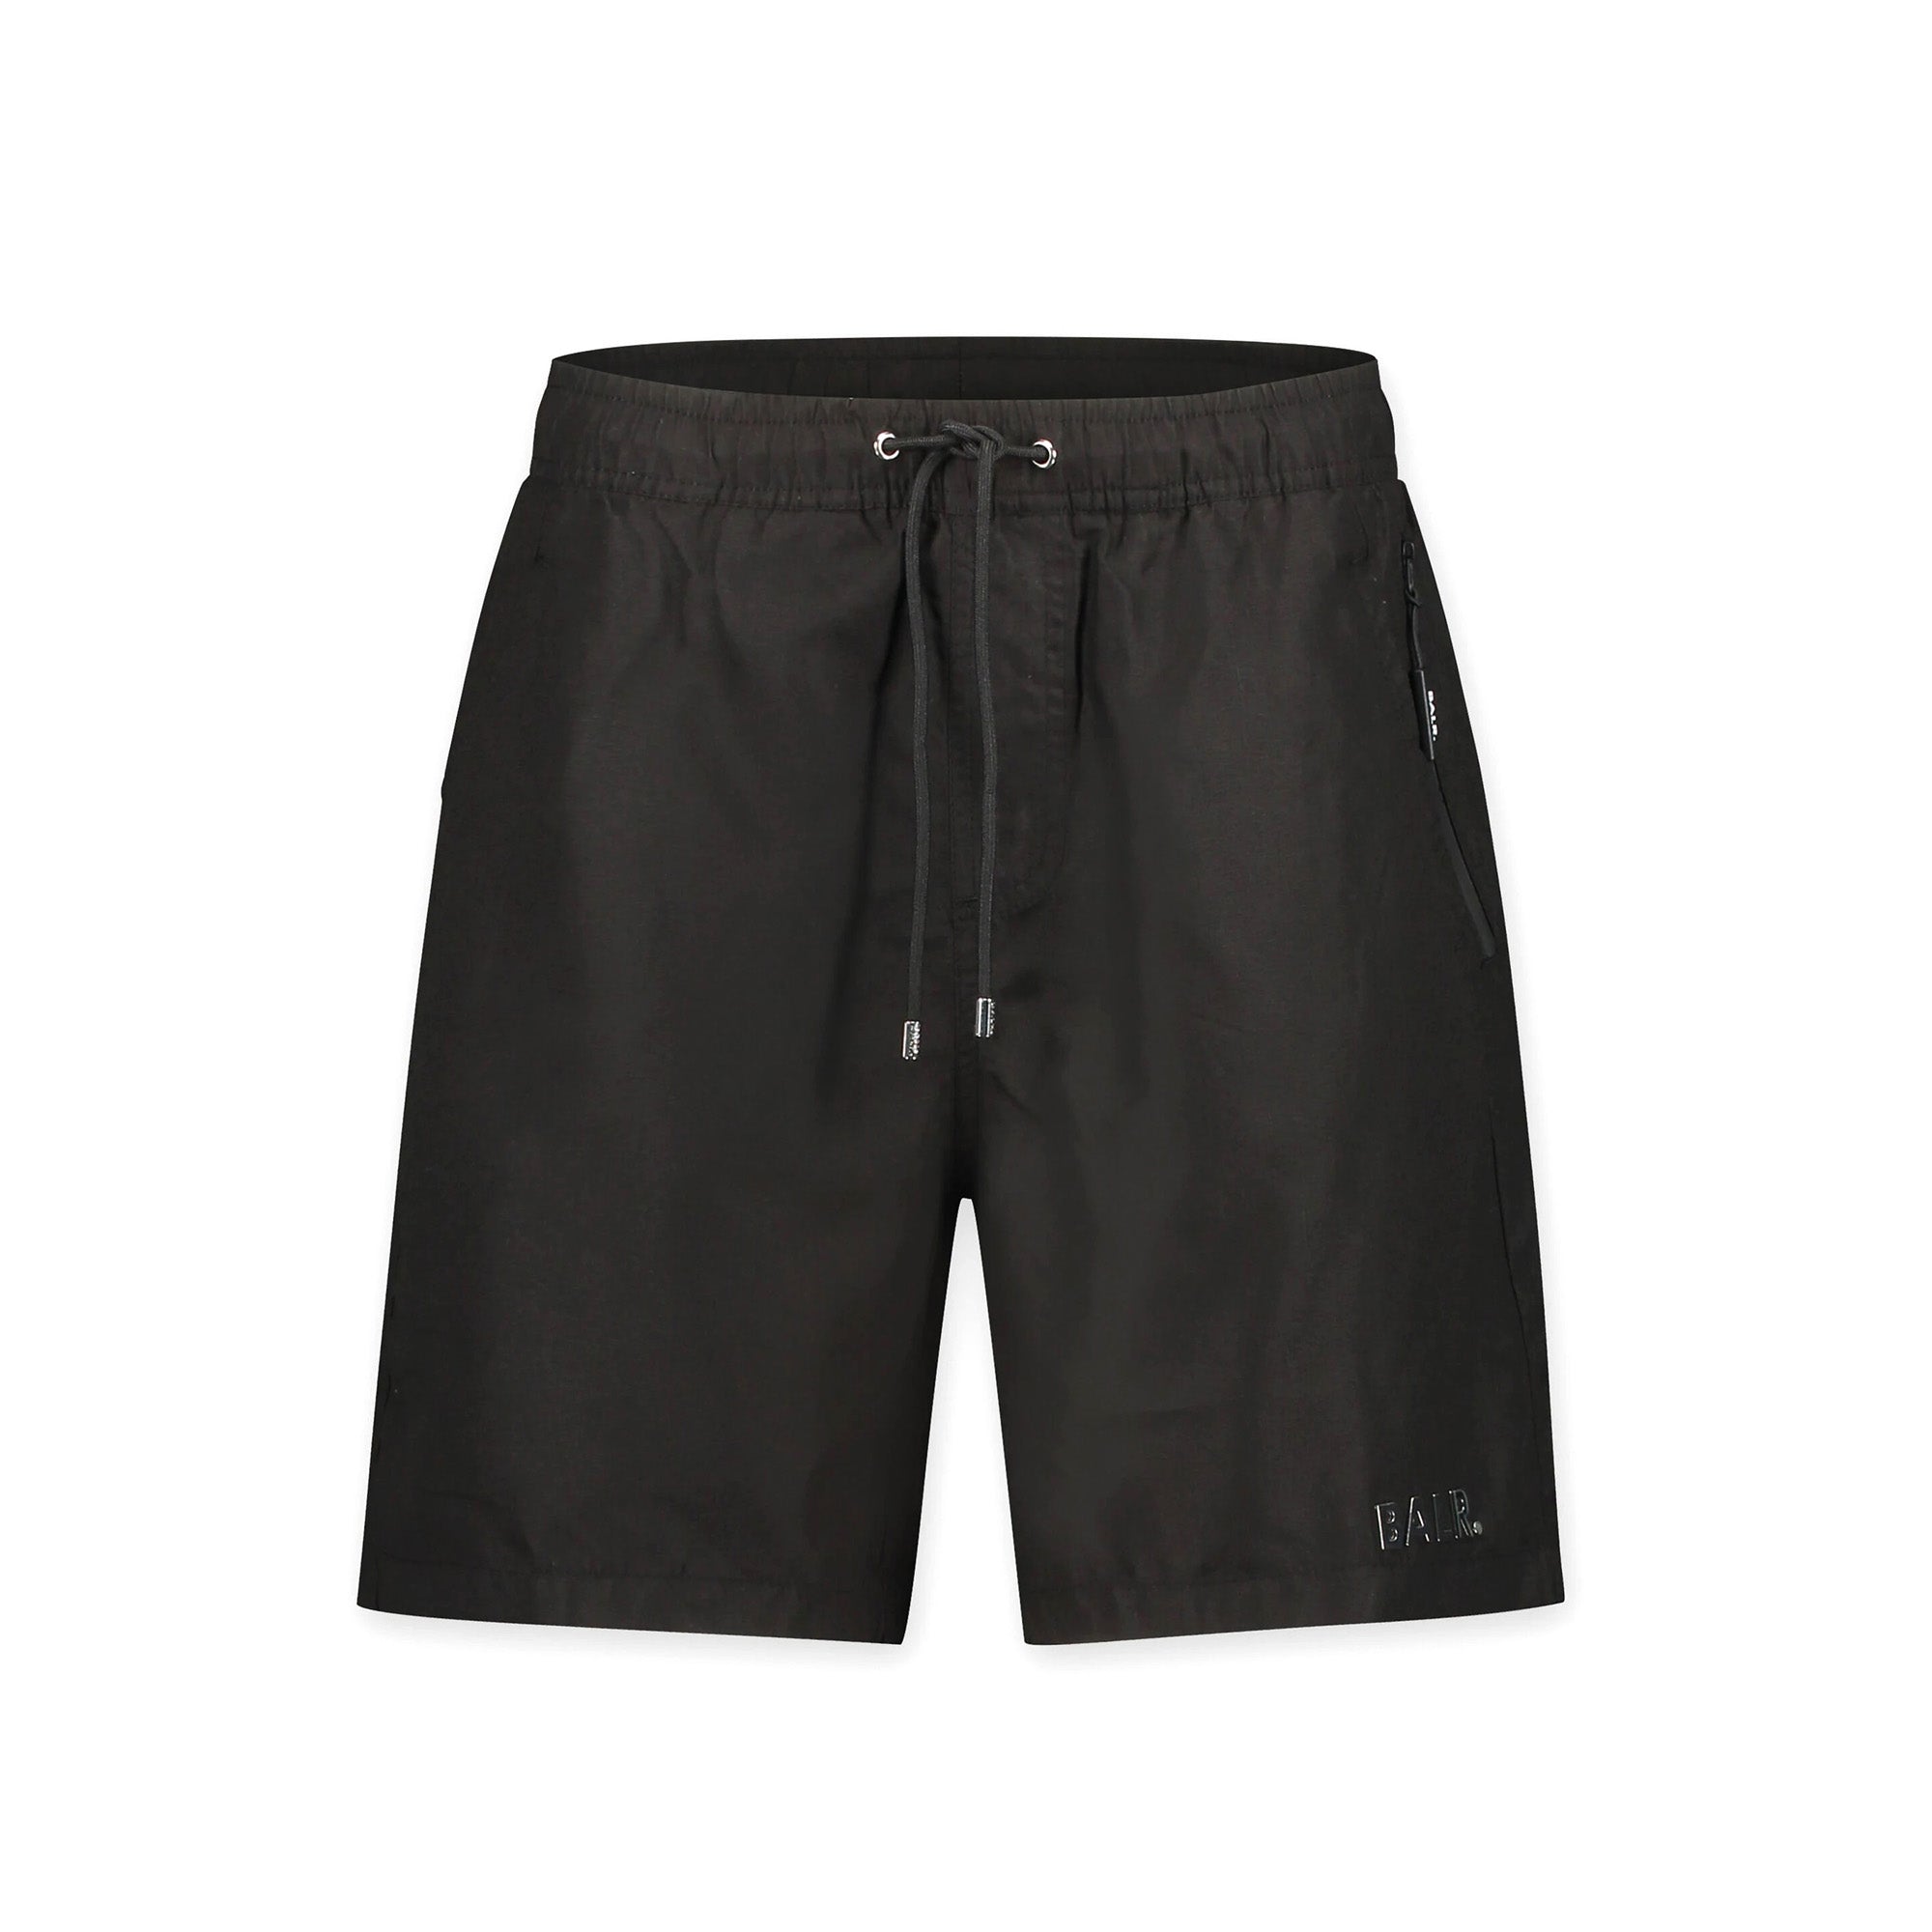 Shop latest trending Black color Balr Shorts Online in UAE